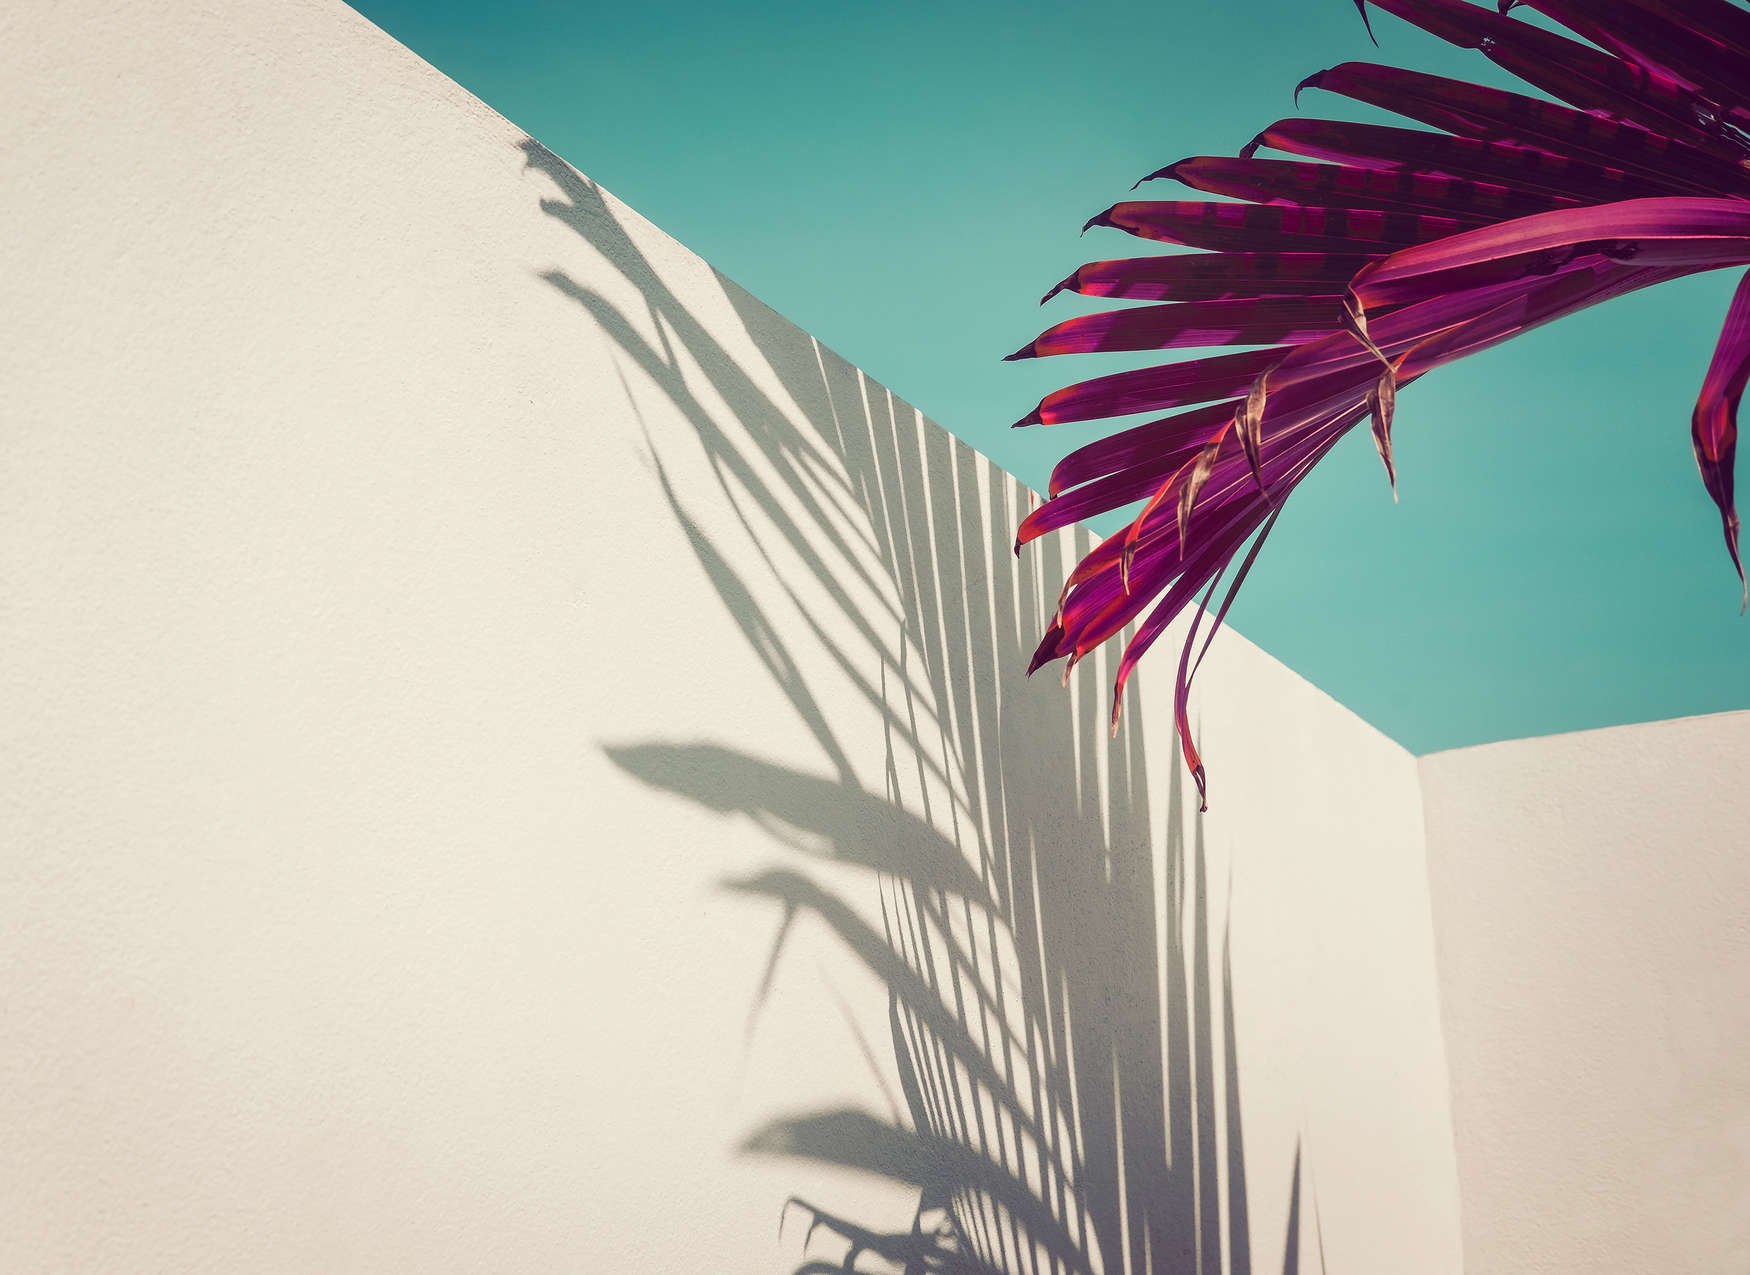             Fototapete mit Palmblatt und Schatten an Betonwand – Lila, Türkis, Weiß
        